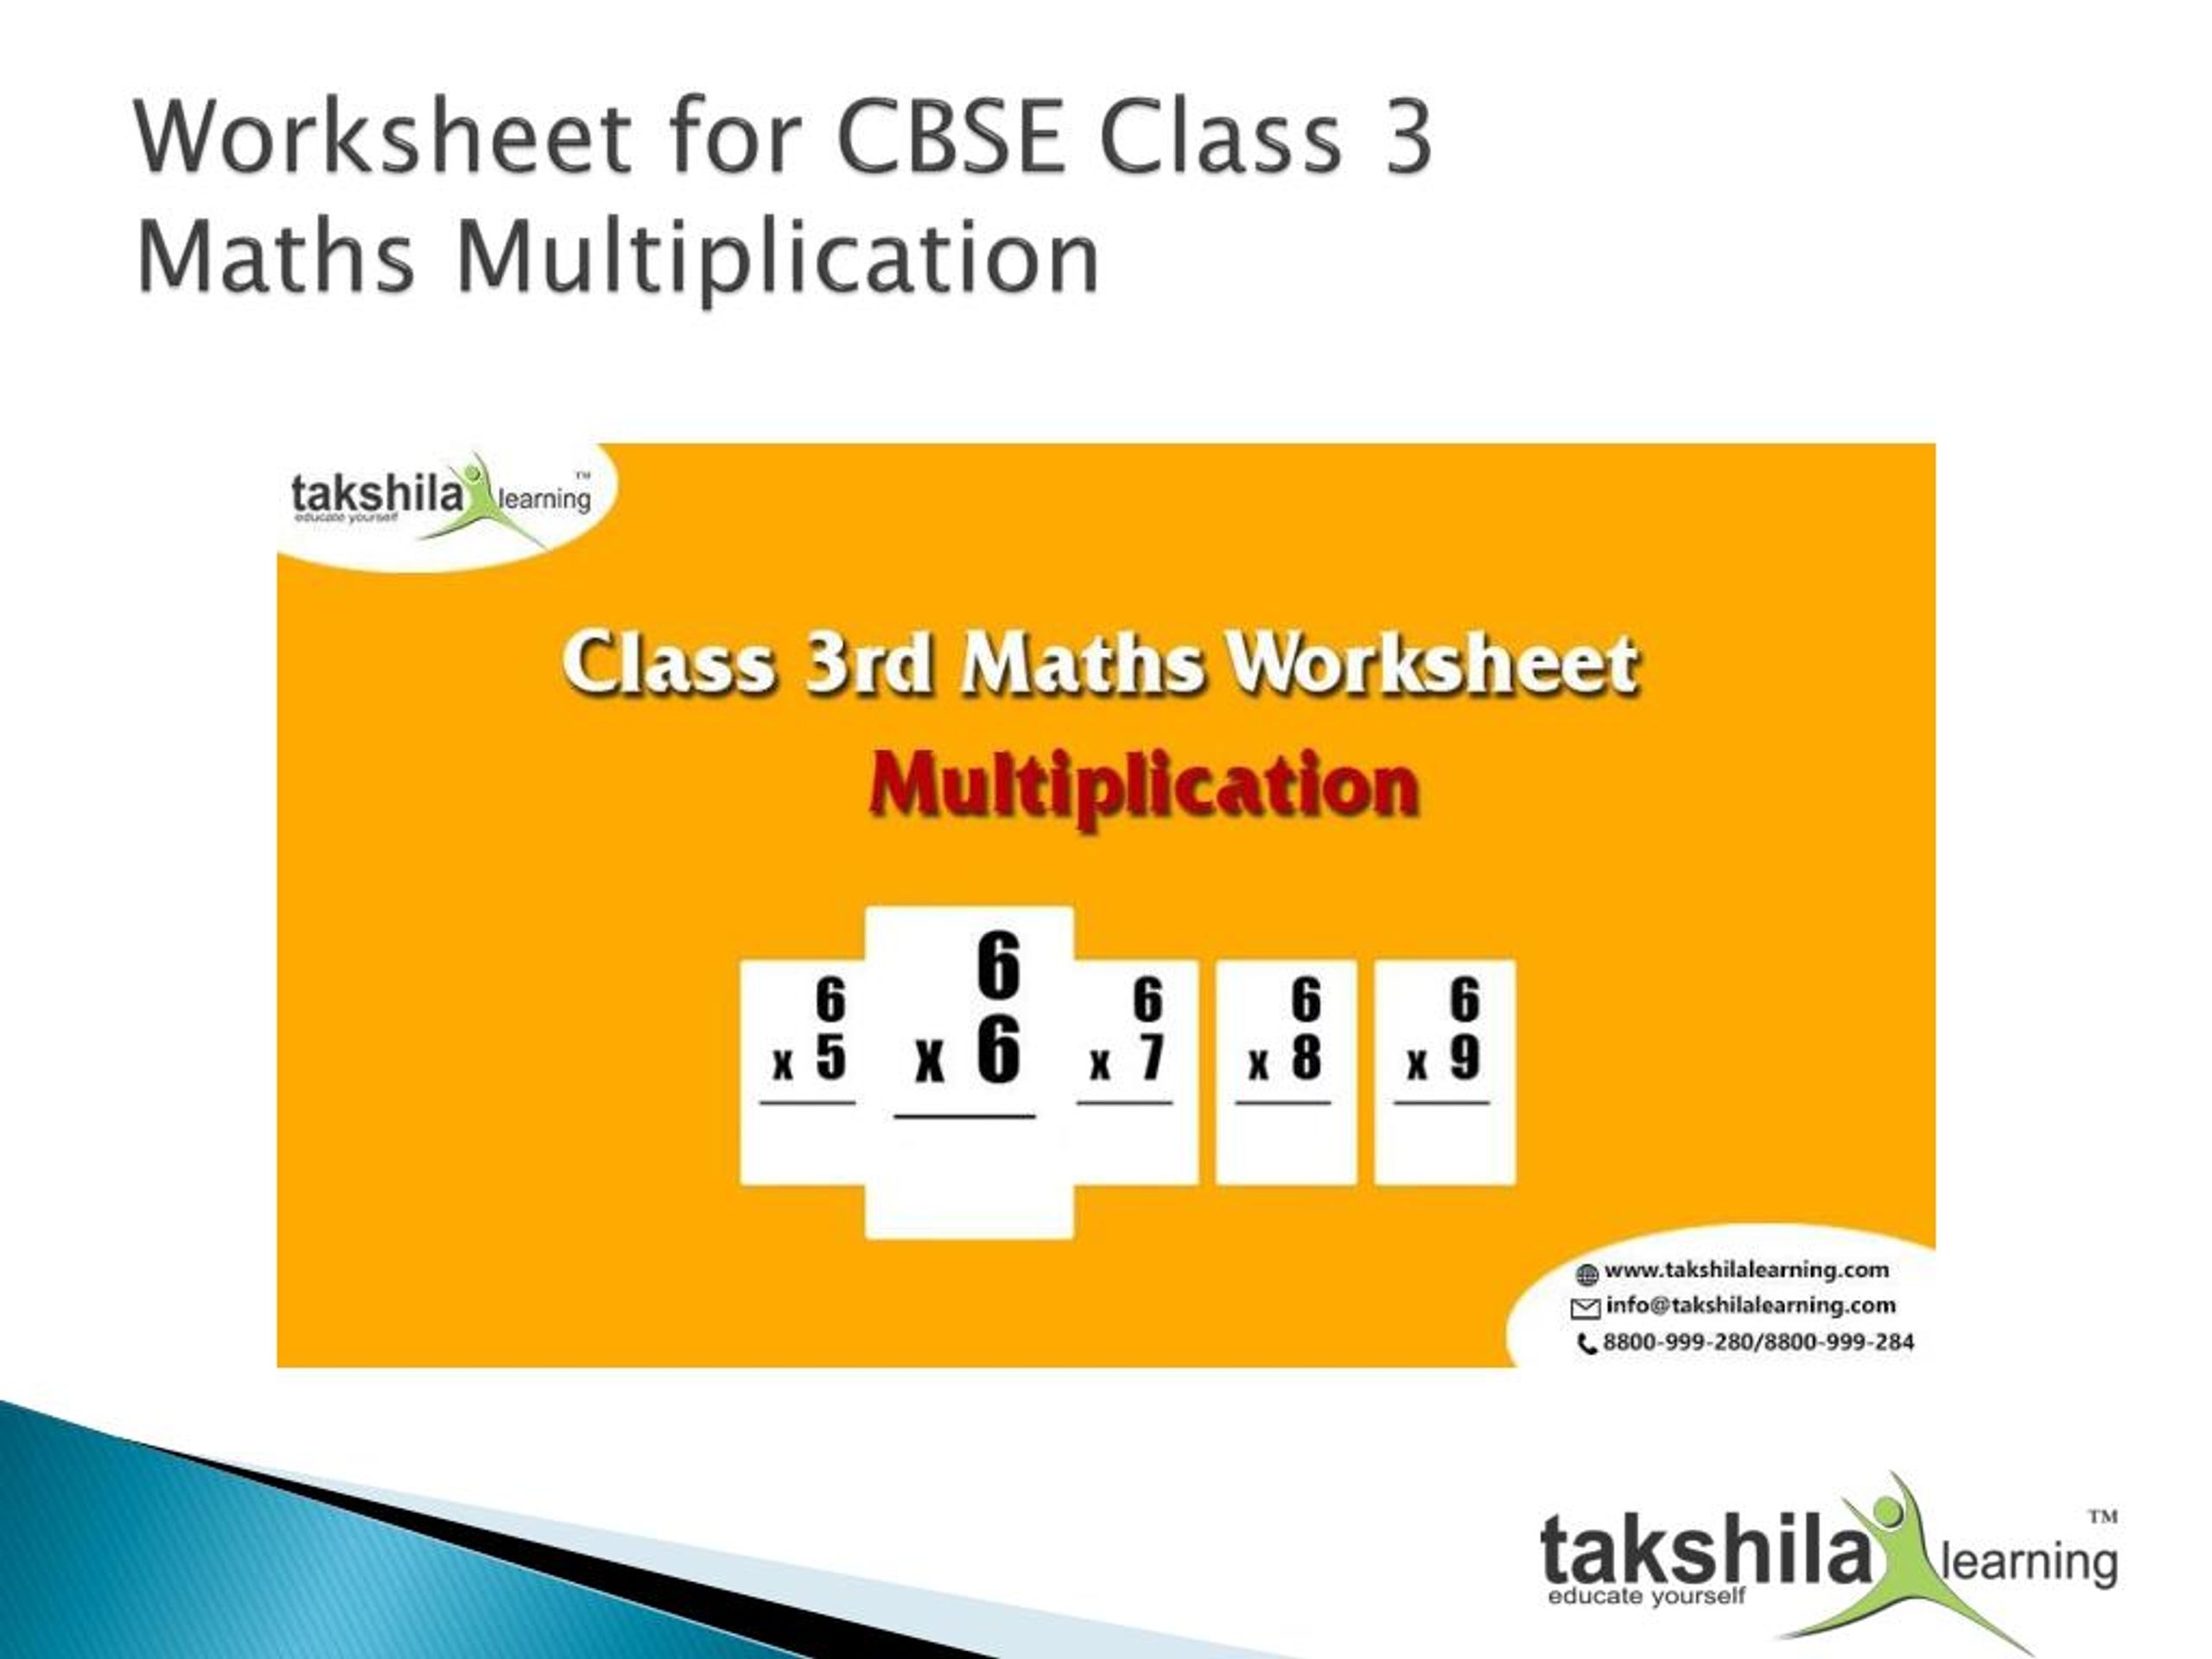 cbse-math-worksheet-for-class-3-cbse-class-3-mathematics-practice-worksheets-for-grade-3-kids